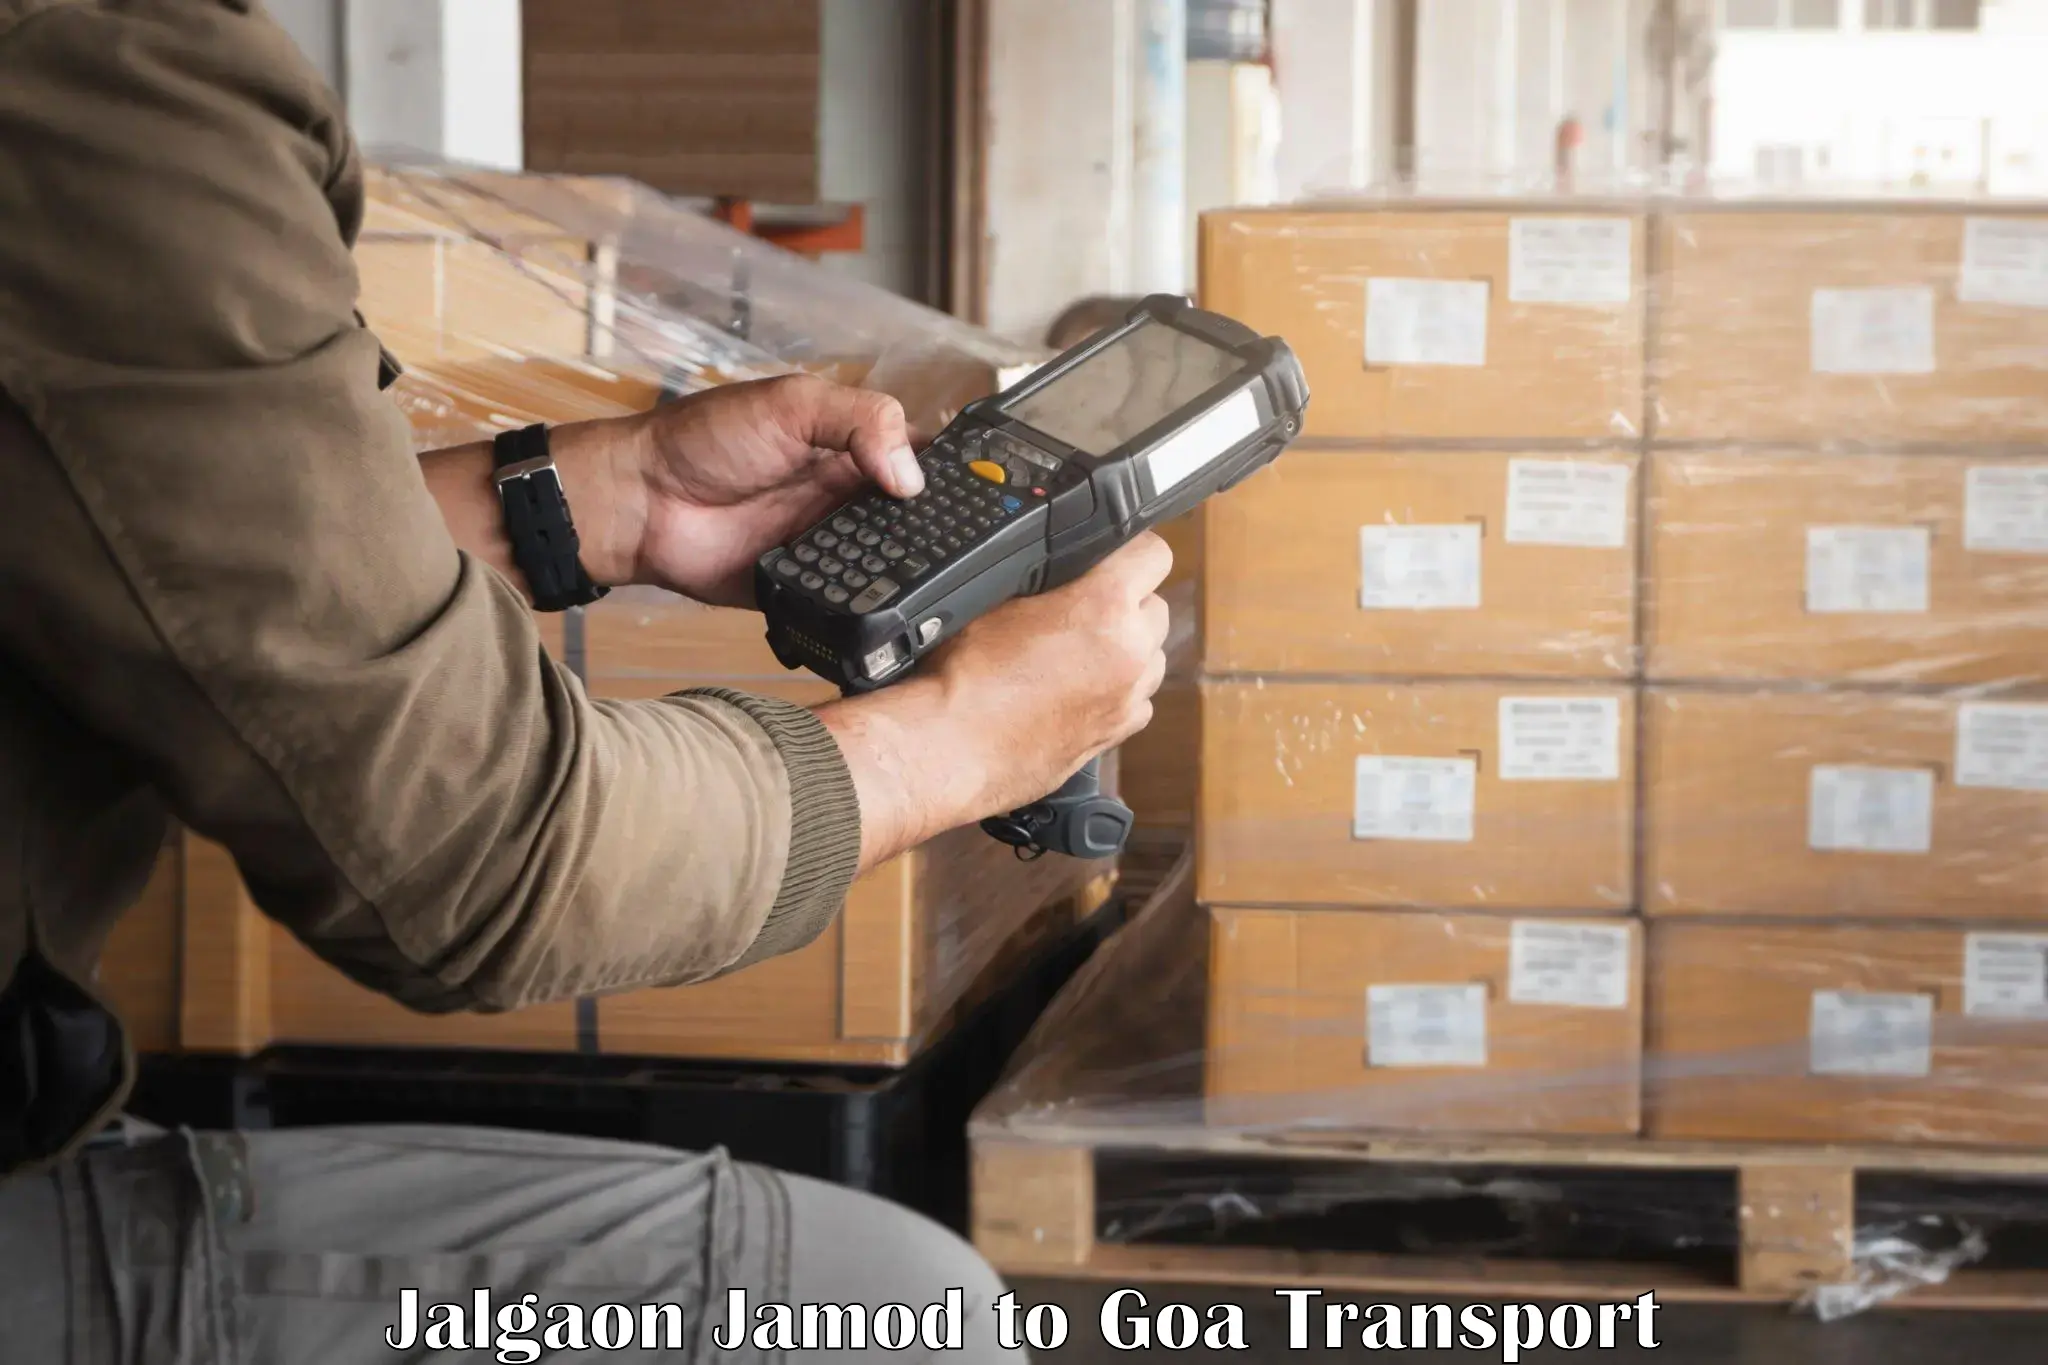 Transportation services Jalgaon Jamod to Margao